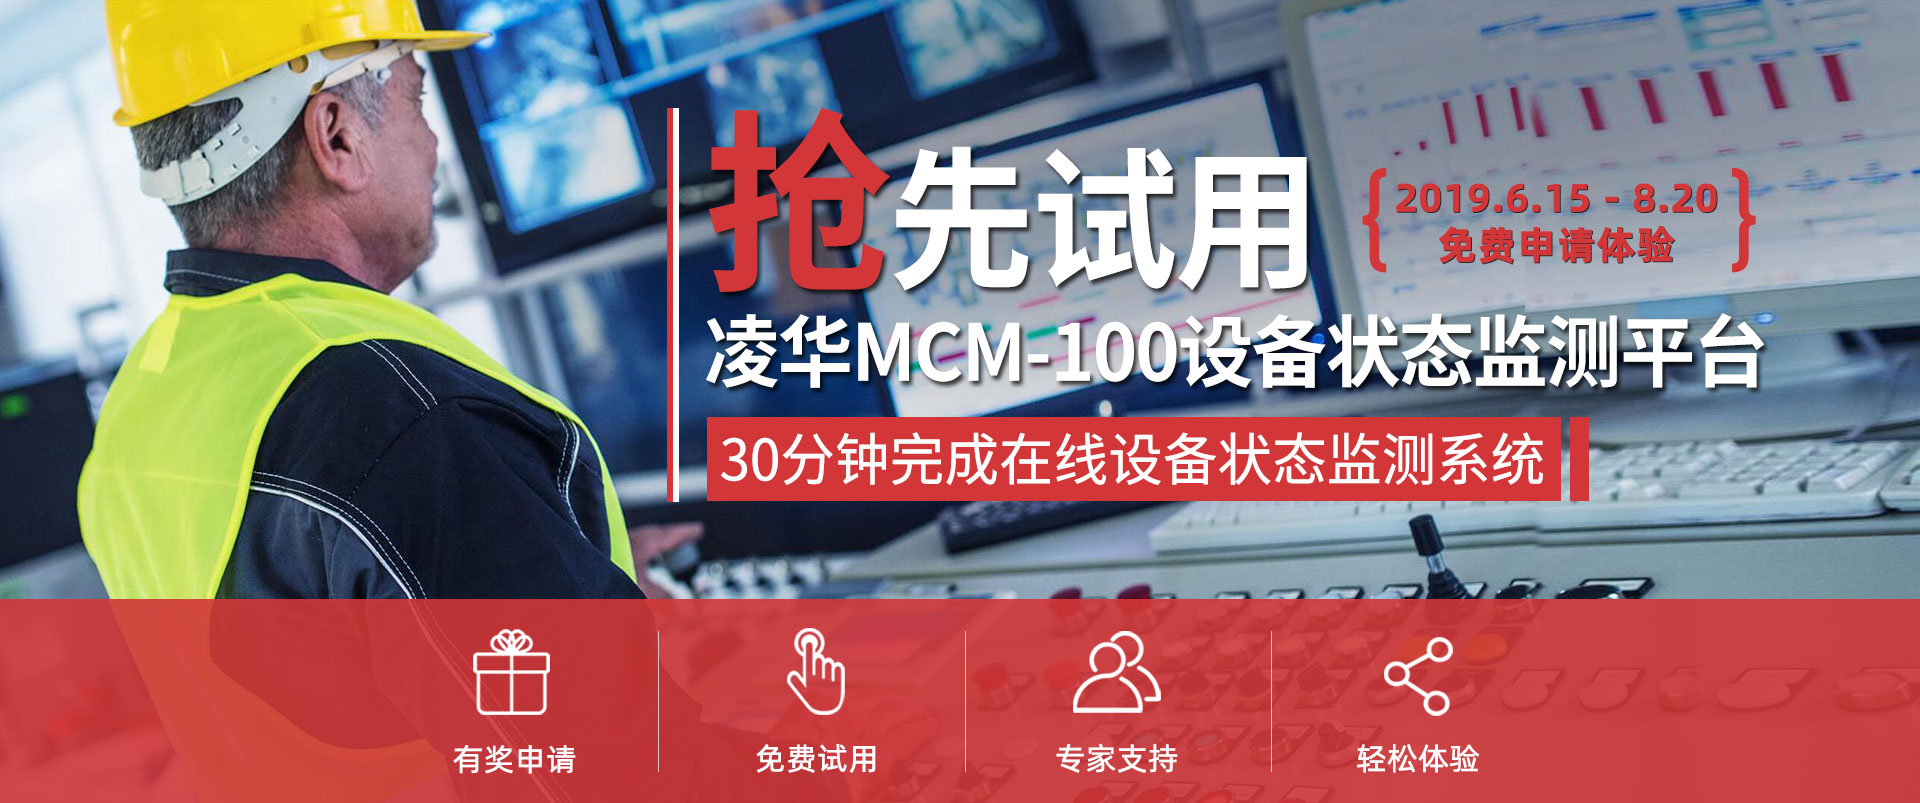 抢先试用凌华MCM-100设备状态监测平台-30分钟完成设备状态监测系统